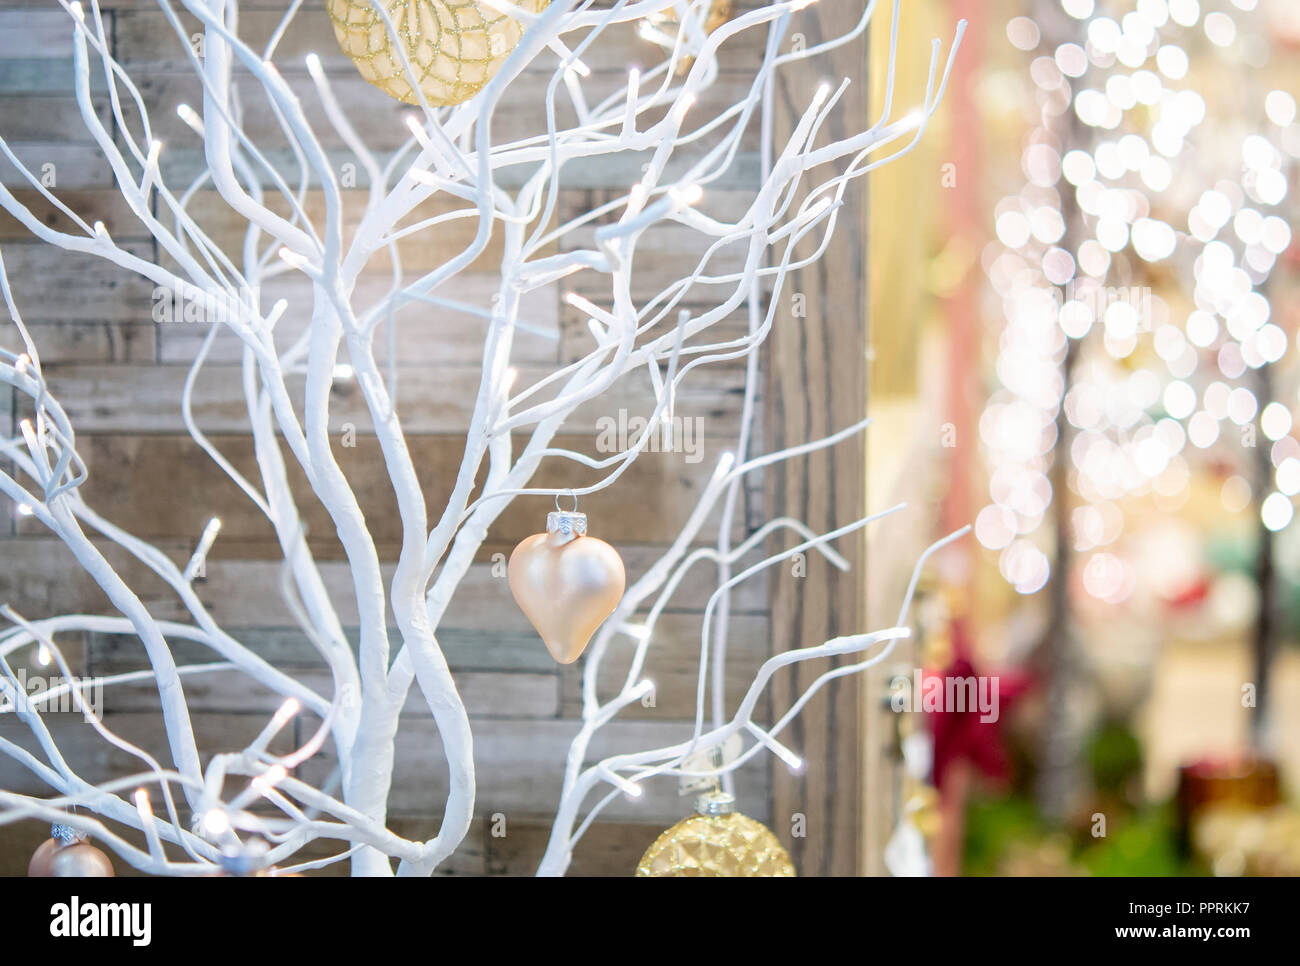 Petit arbre sec peint en couleur blanc décoré de boiseries toy coeur pendant une chute de neige close-up à l'intérieur de la maison. Paysage d'hiver Noël Nouvel an arrière-plan. Concept Banque D'Images